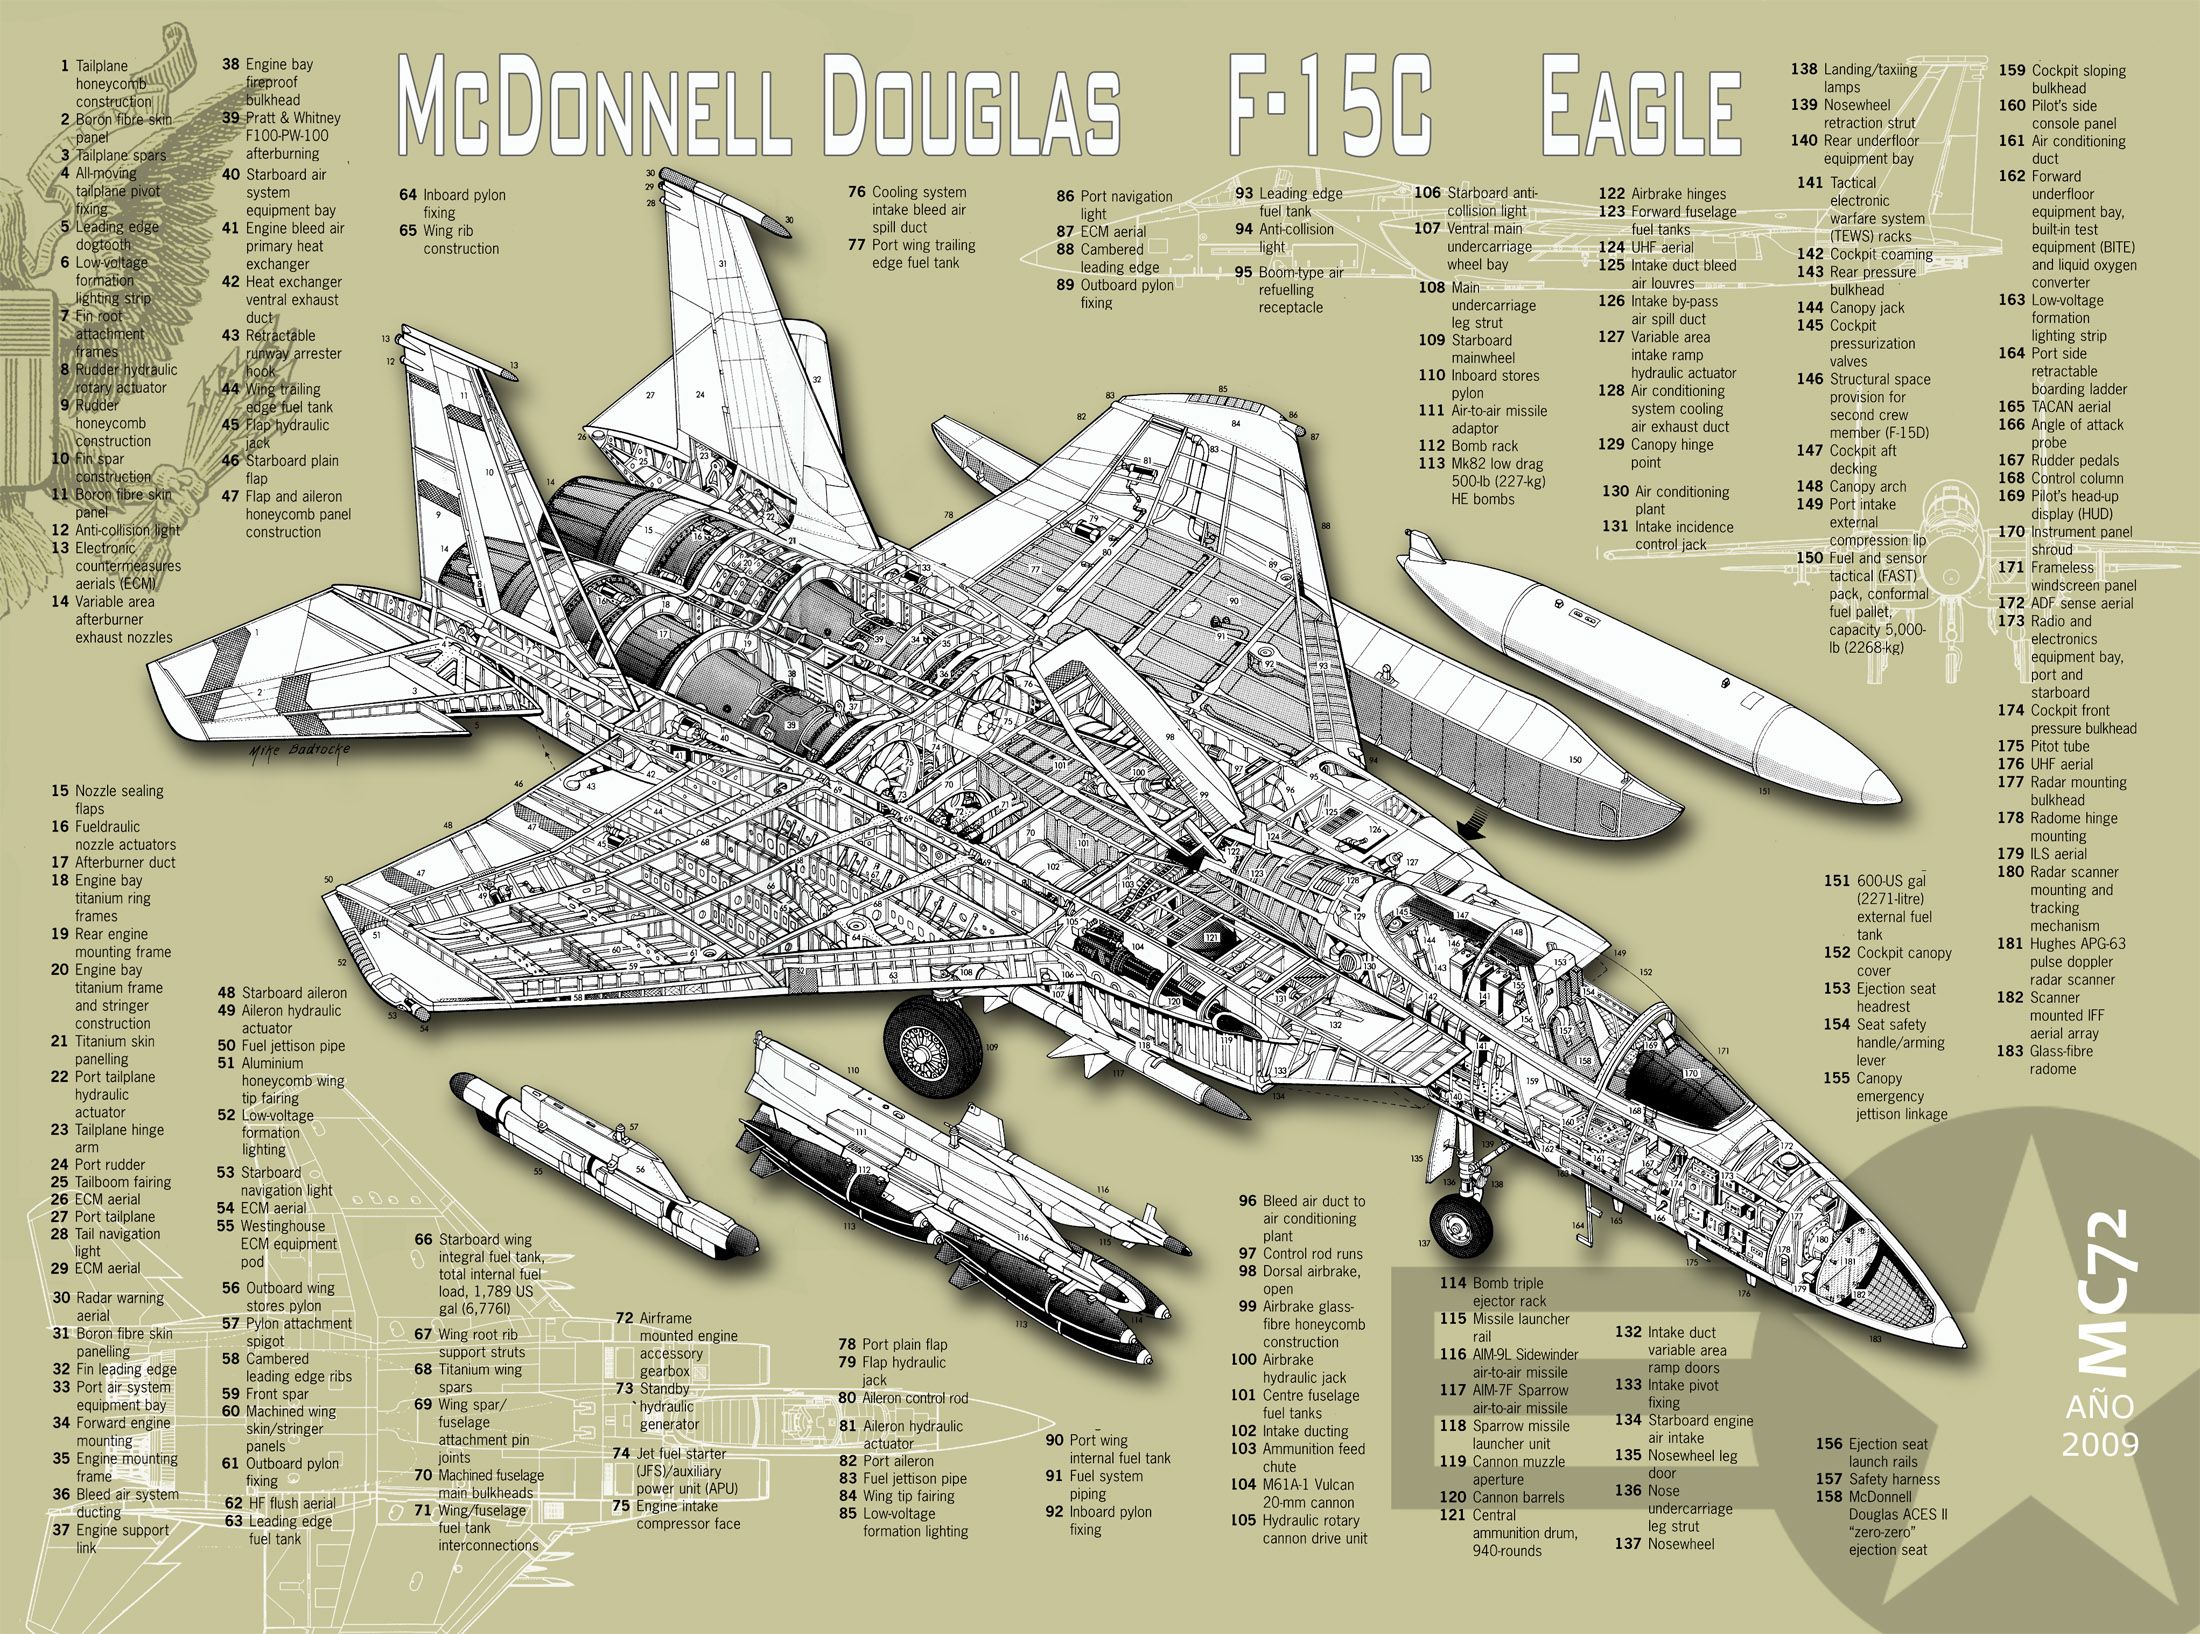 McDonnell_Douglas_F-15c